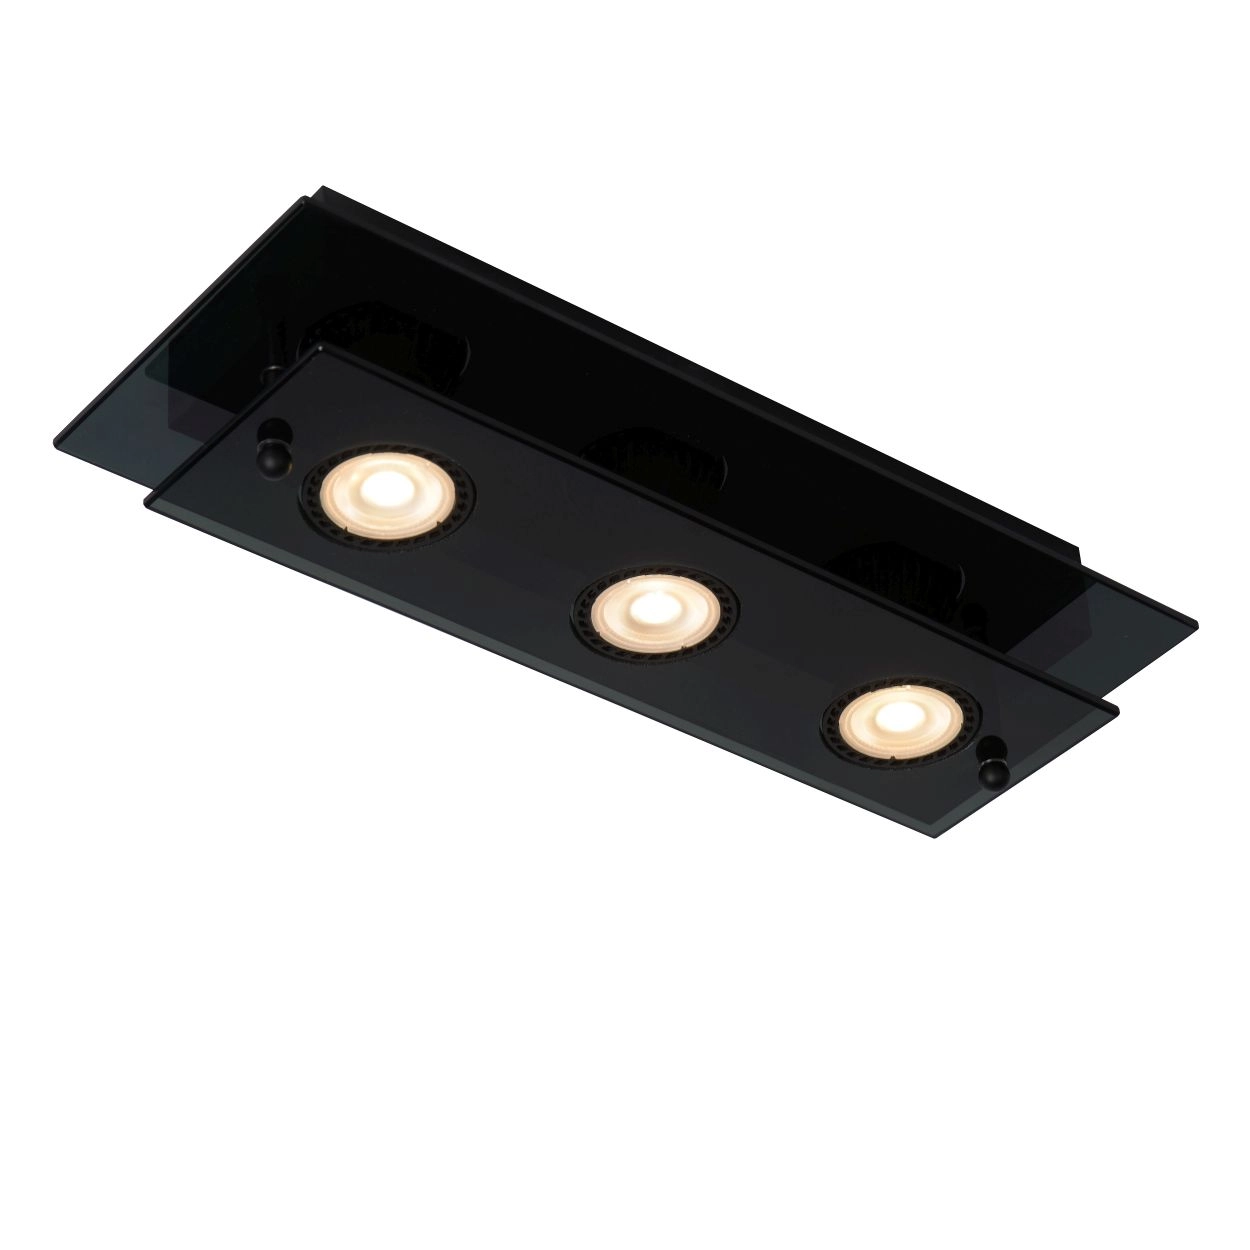 LU 79181/03/30 Lucide OKNO - Flush ceiling light - 3xGU10 - Black